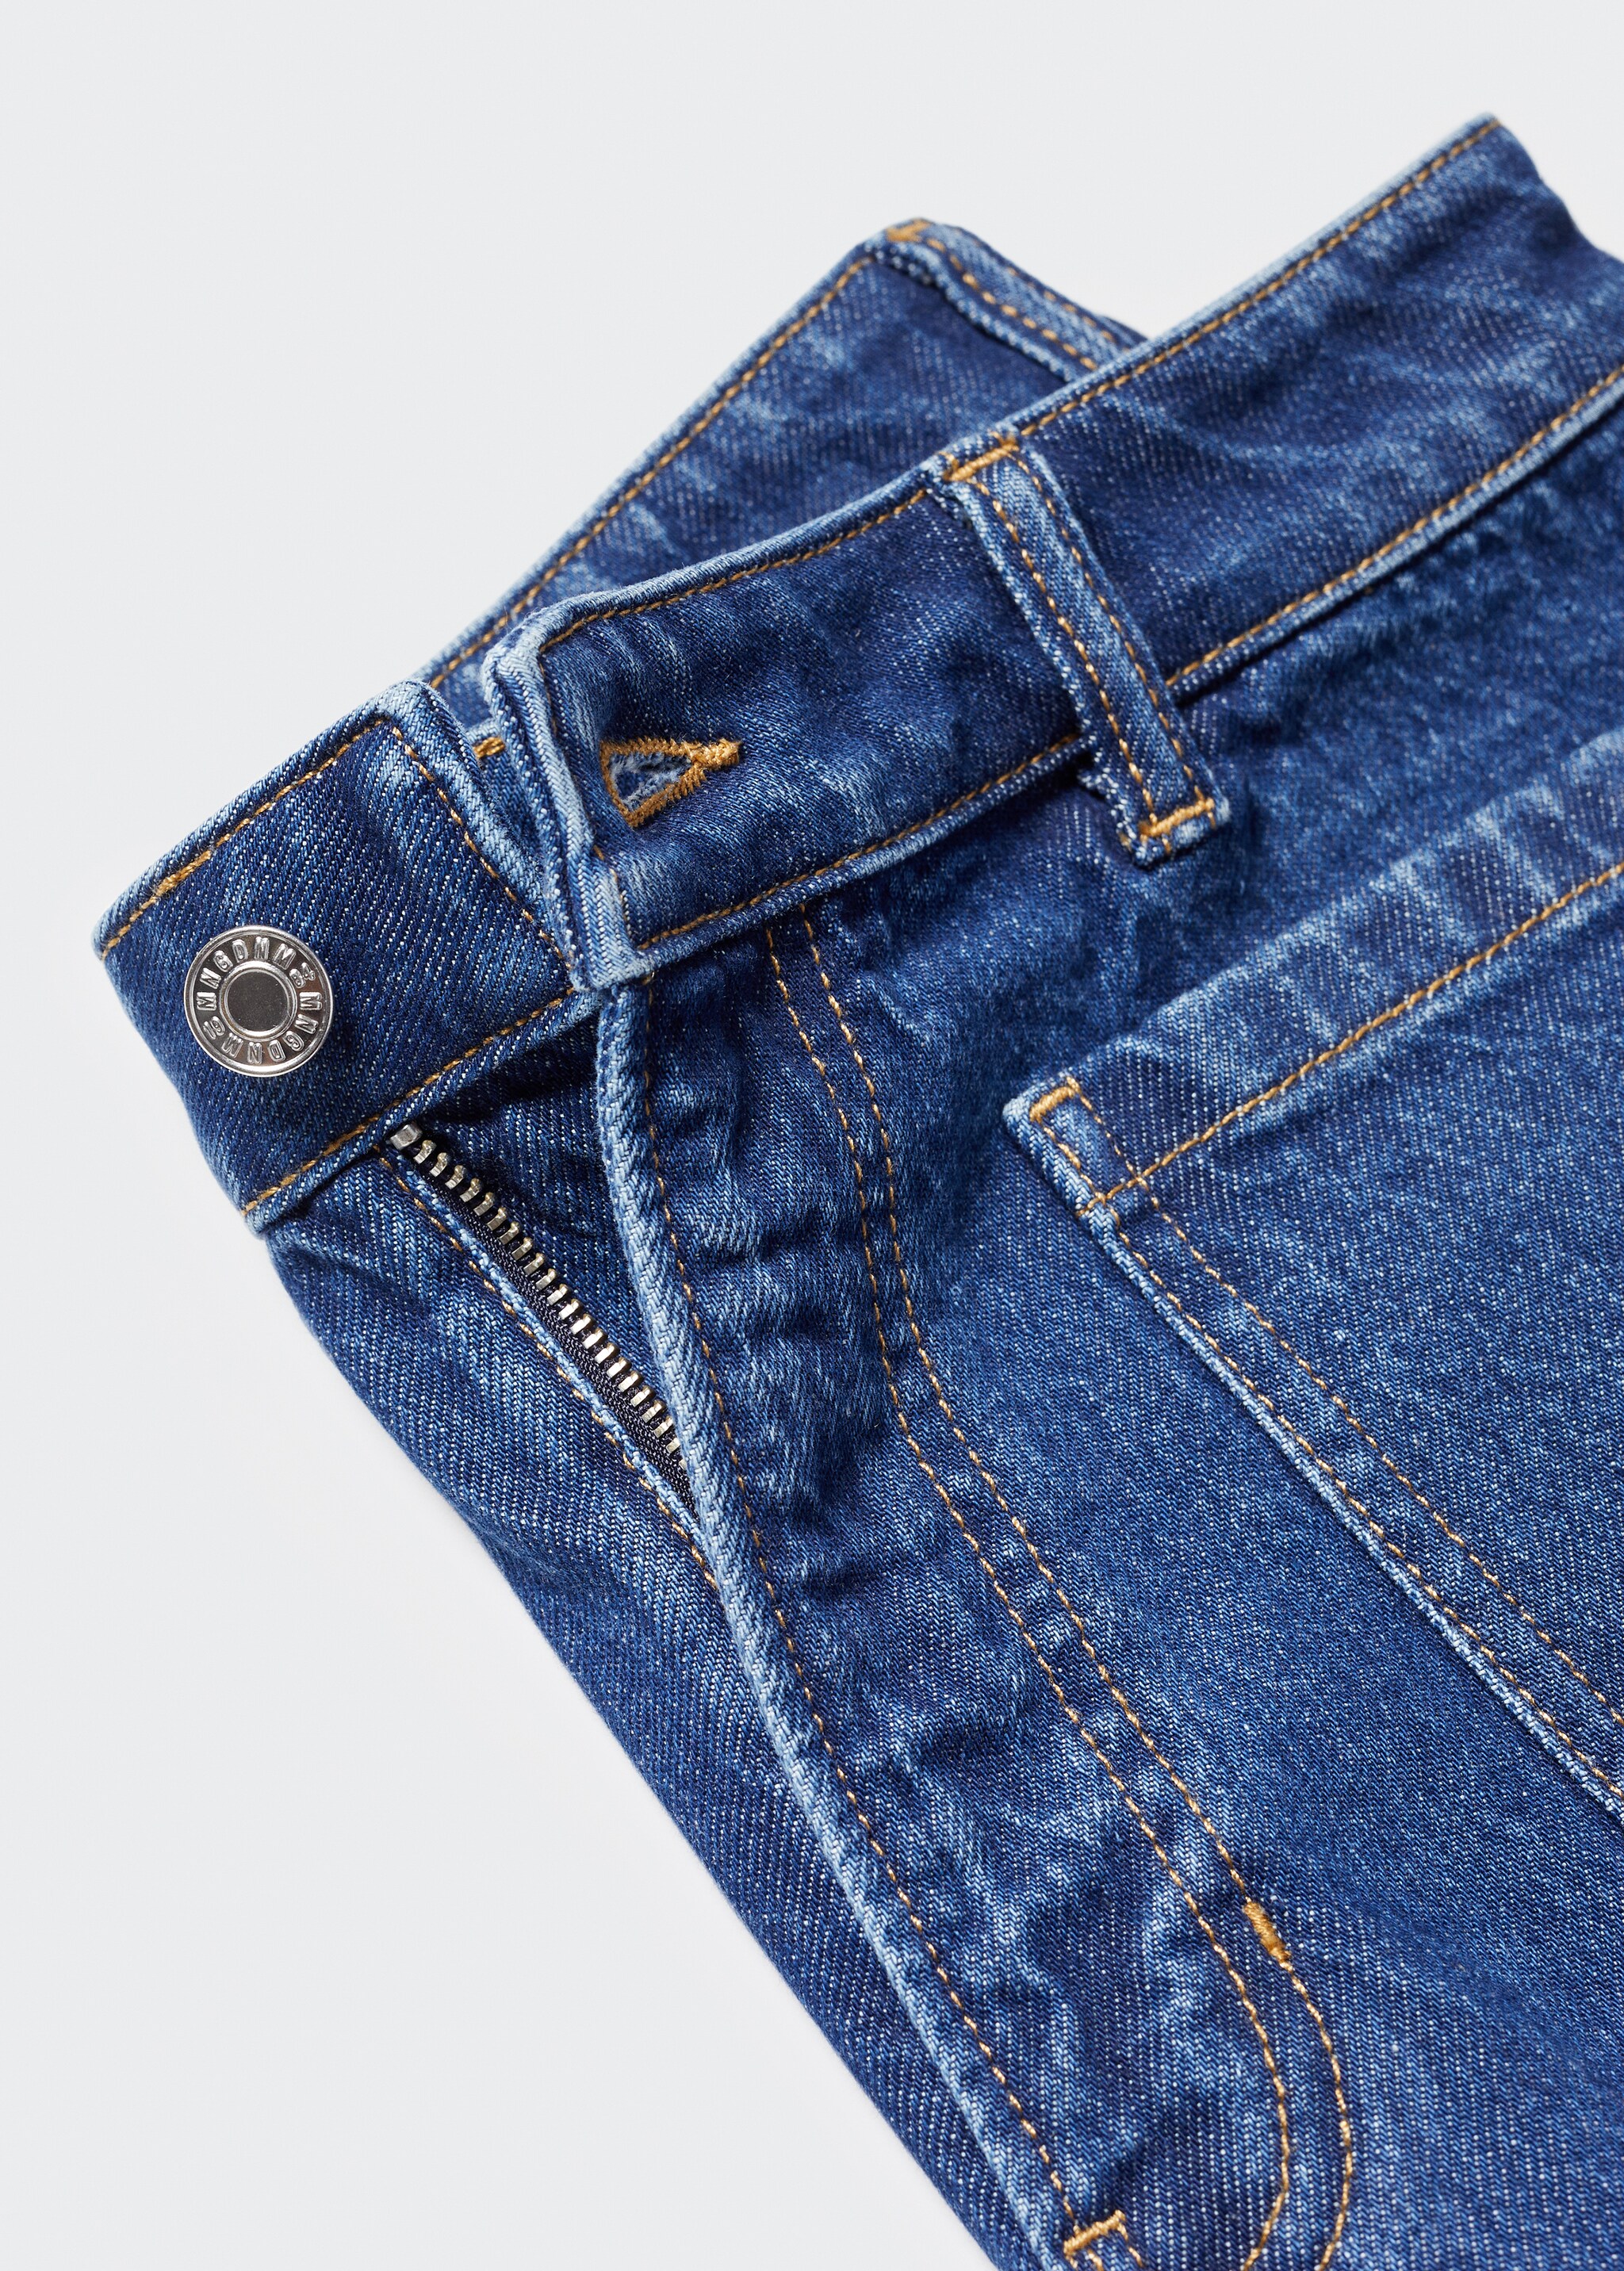 Jeans-Shorts mit Taschen - Detail des Artikels 8